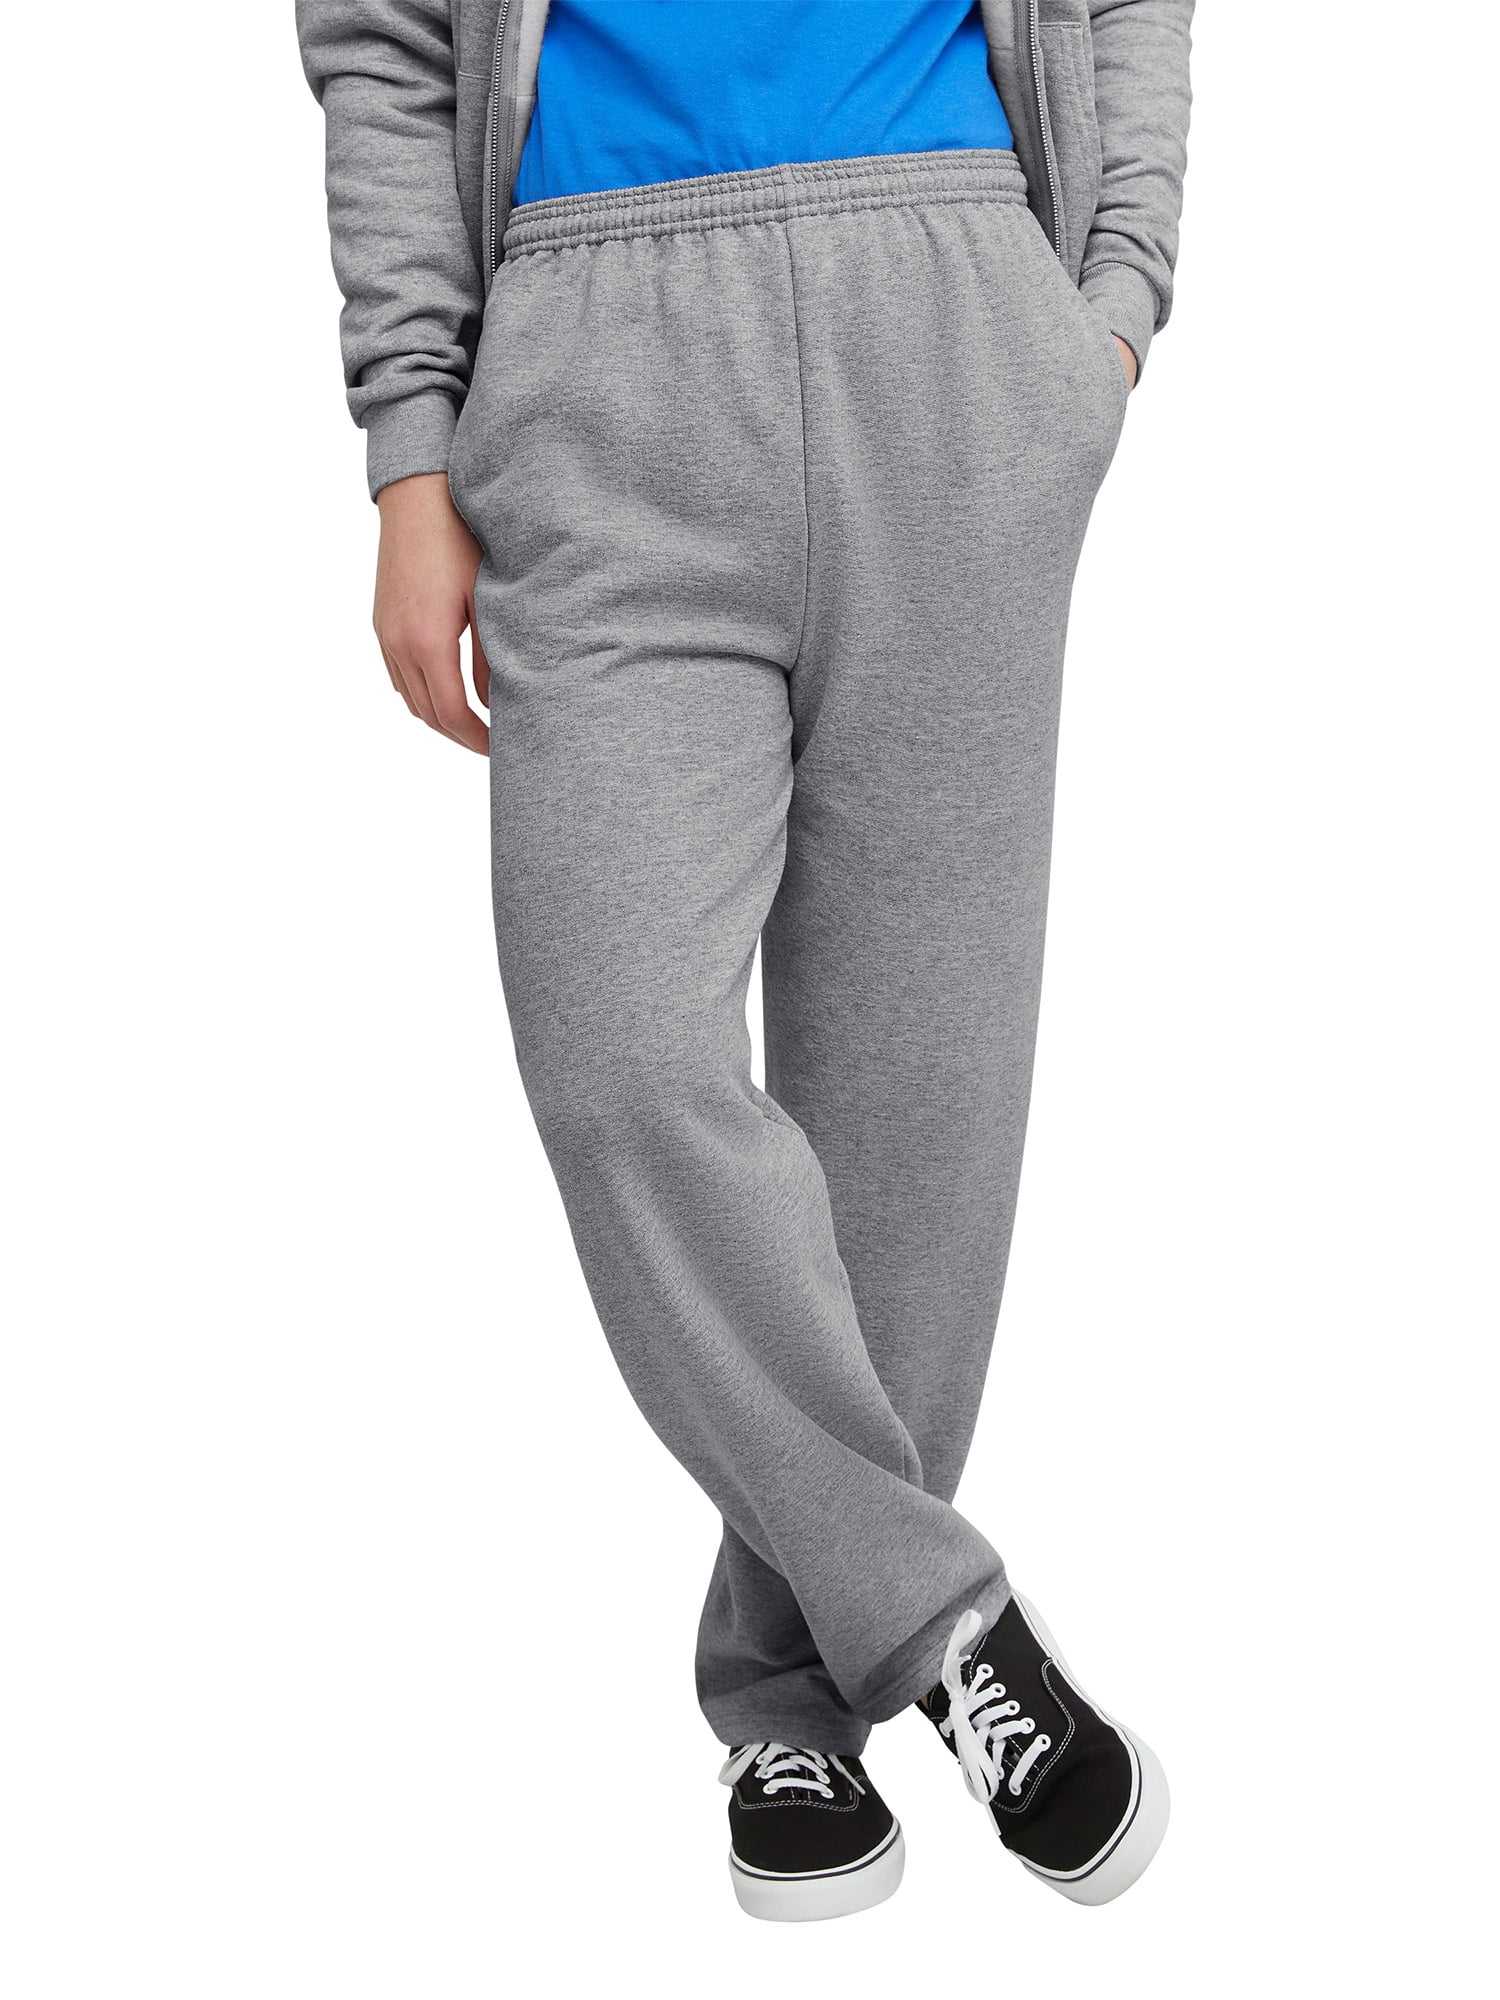 Hanes Men's and Big Men's EcoSmart Fleece Sweatpants with Pockets